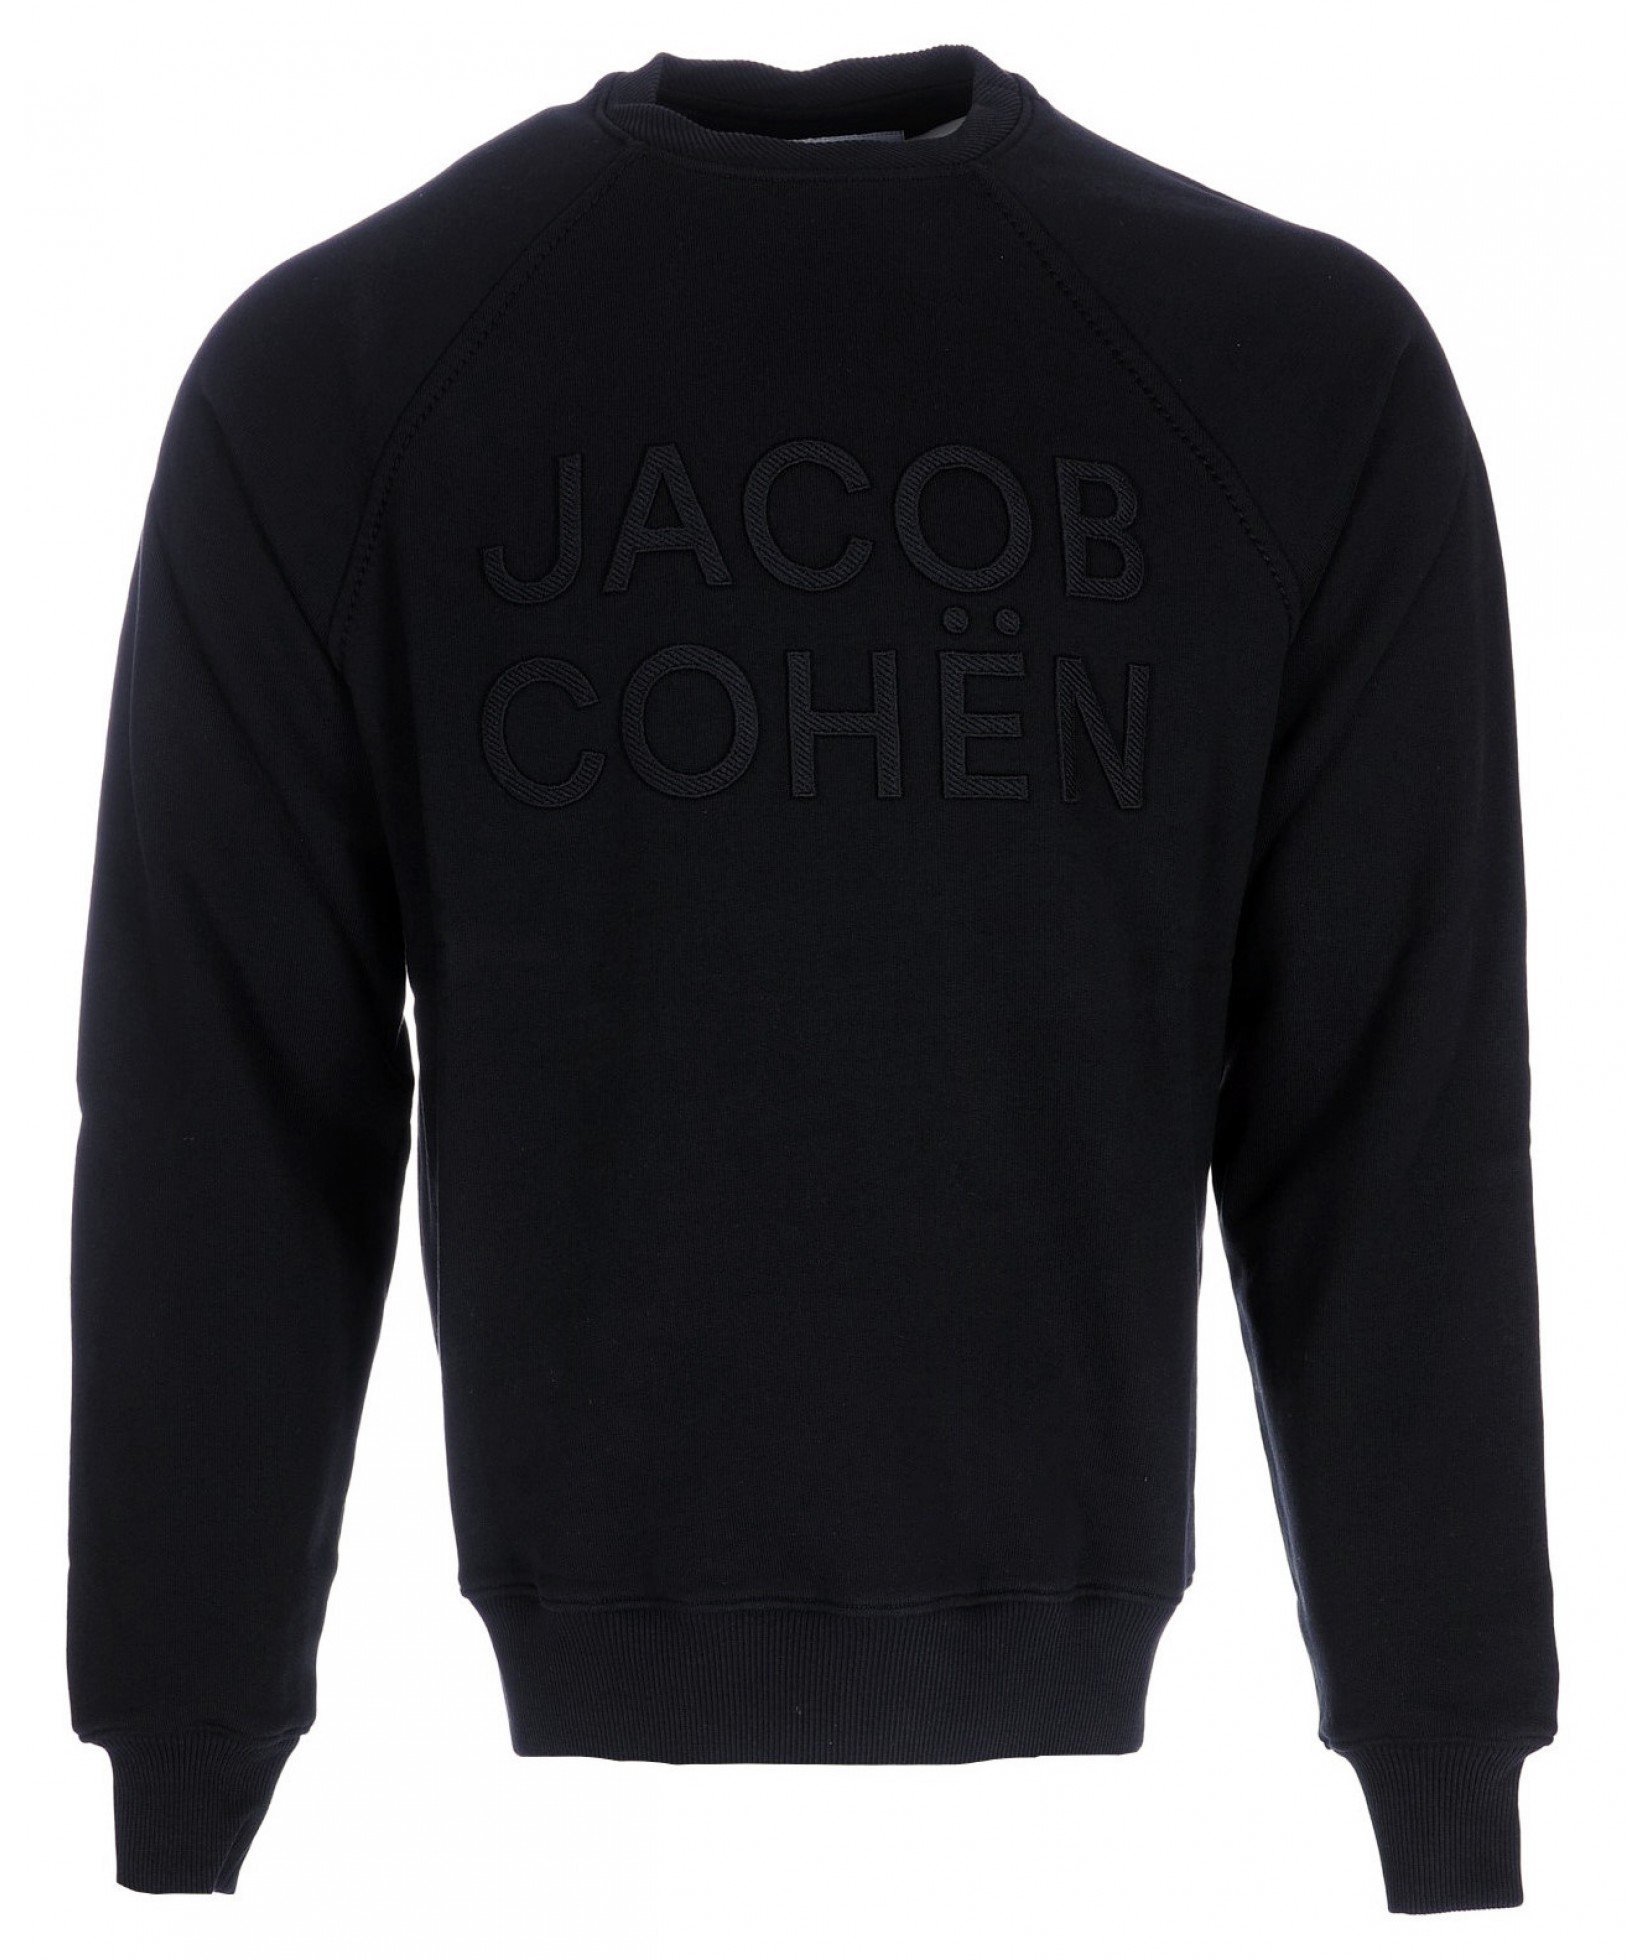 Jacob Cohën sweater black(34847)